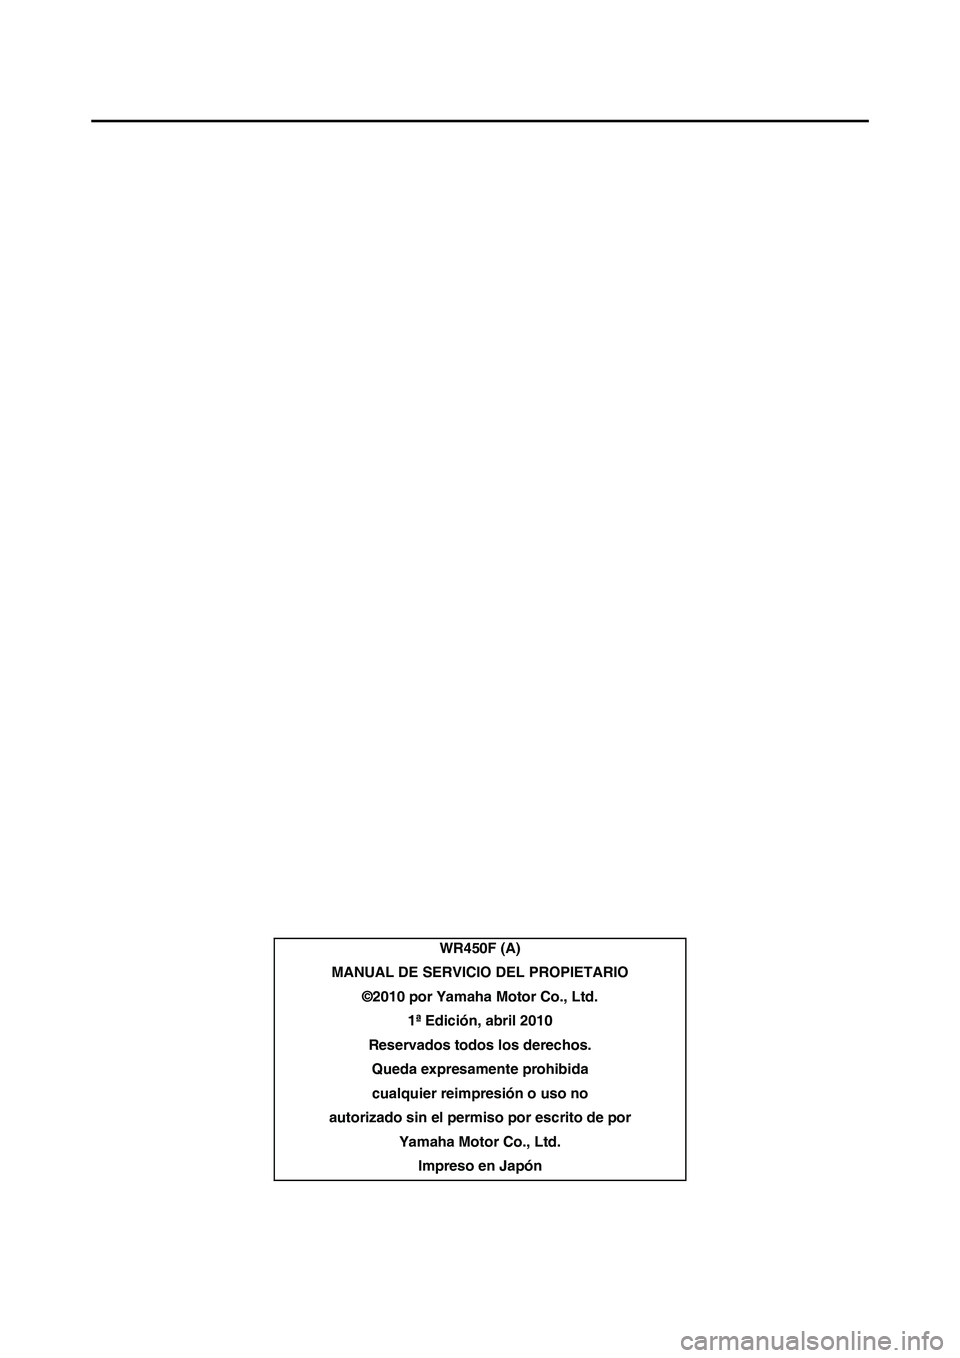 YAMAHA WR 450F 2011  Manuale de Empleo (in Spanish) 
WR450F (A)
MANUAL DE SERVICIO  DEL PROPIETARIO
©2010 por Yamaha Motor Co., Ltd. 1ª Edición, abril 2010
Reservados todos los derechos. Queda expresamente prohibidacualquier reimpresión o uso no 
a